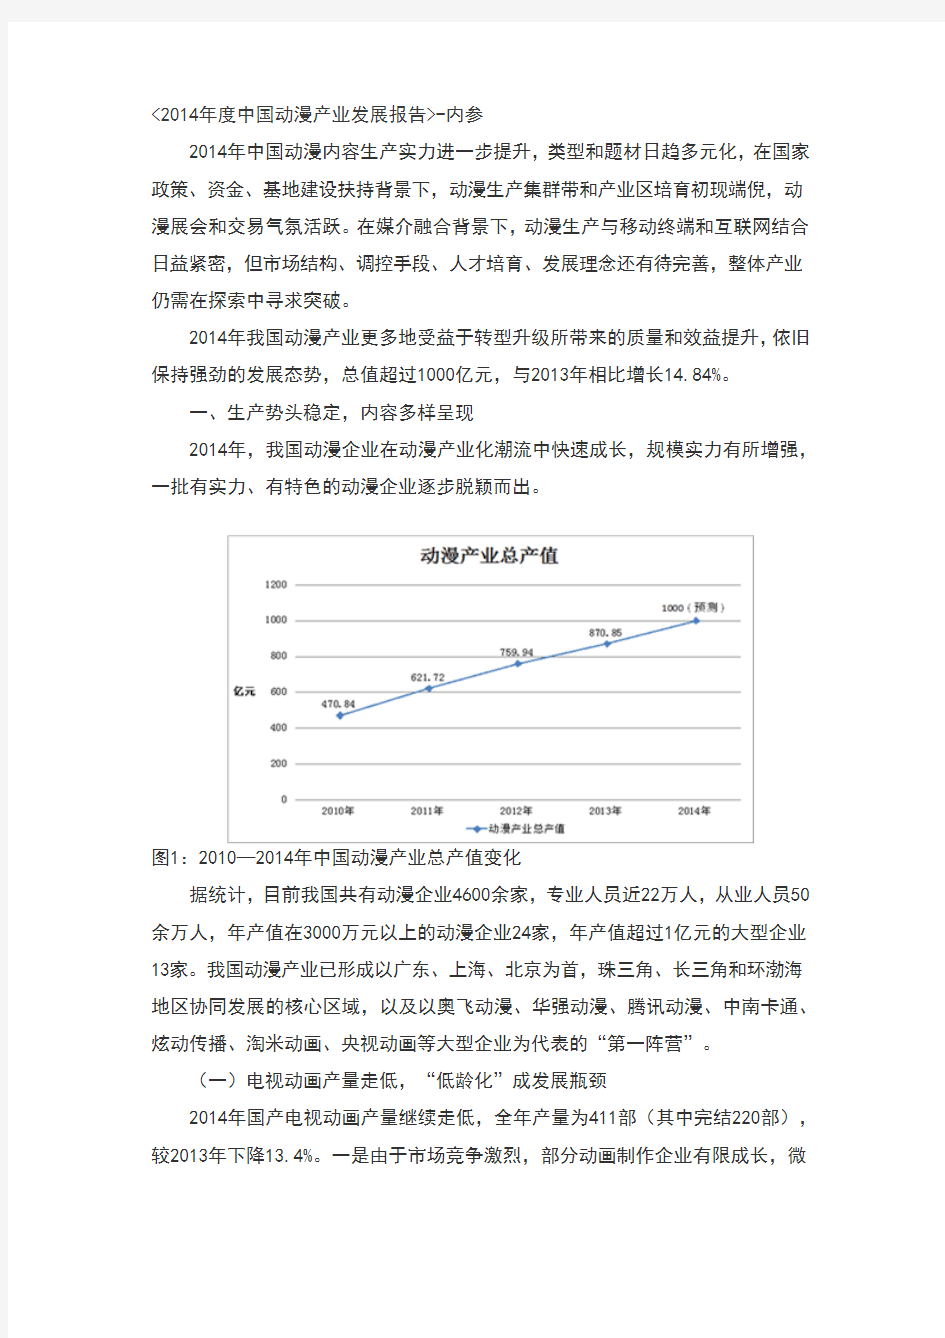 2014年度中国动漫产业发展报告